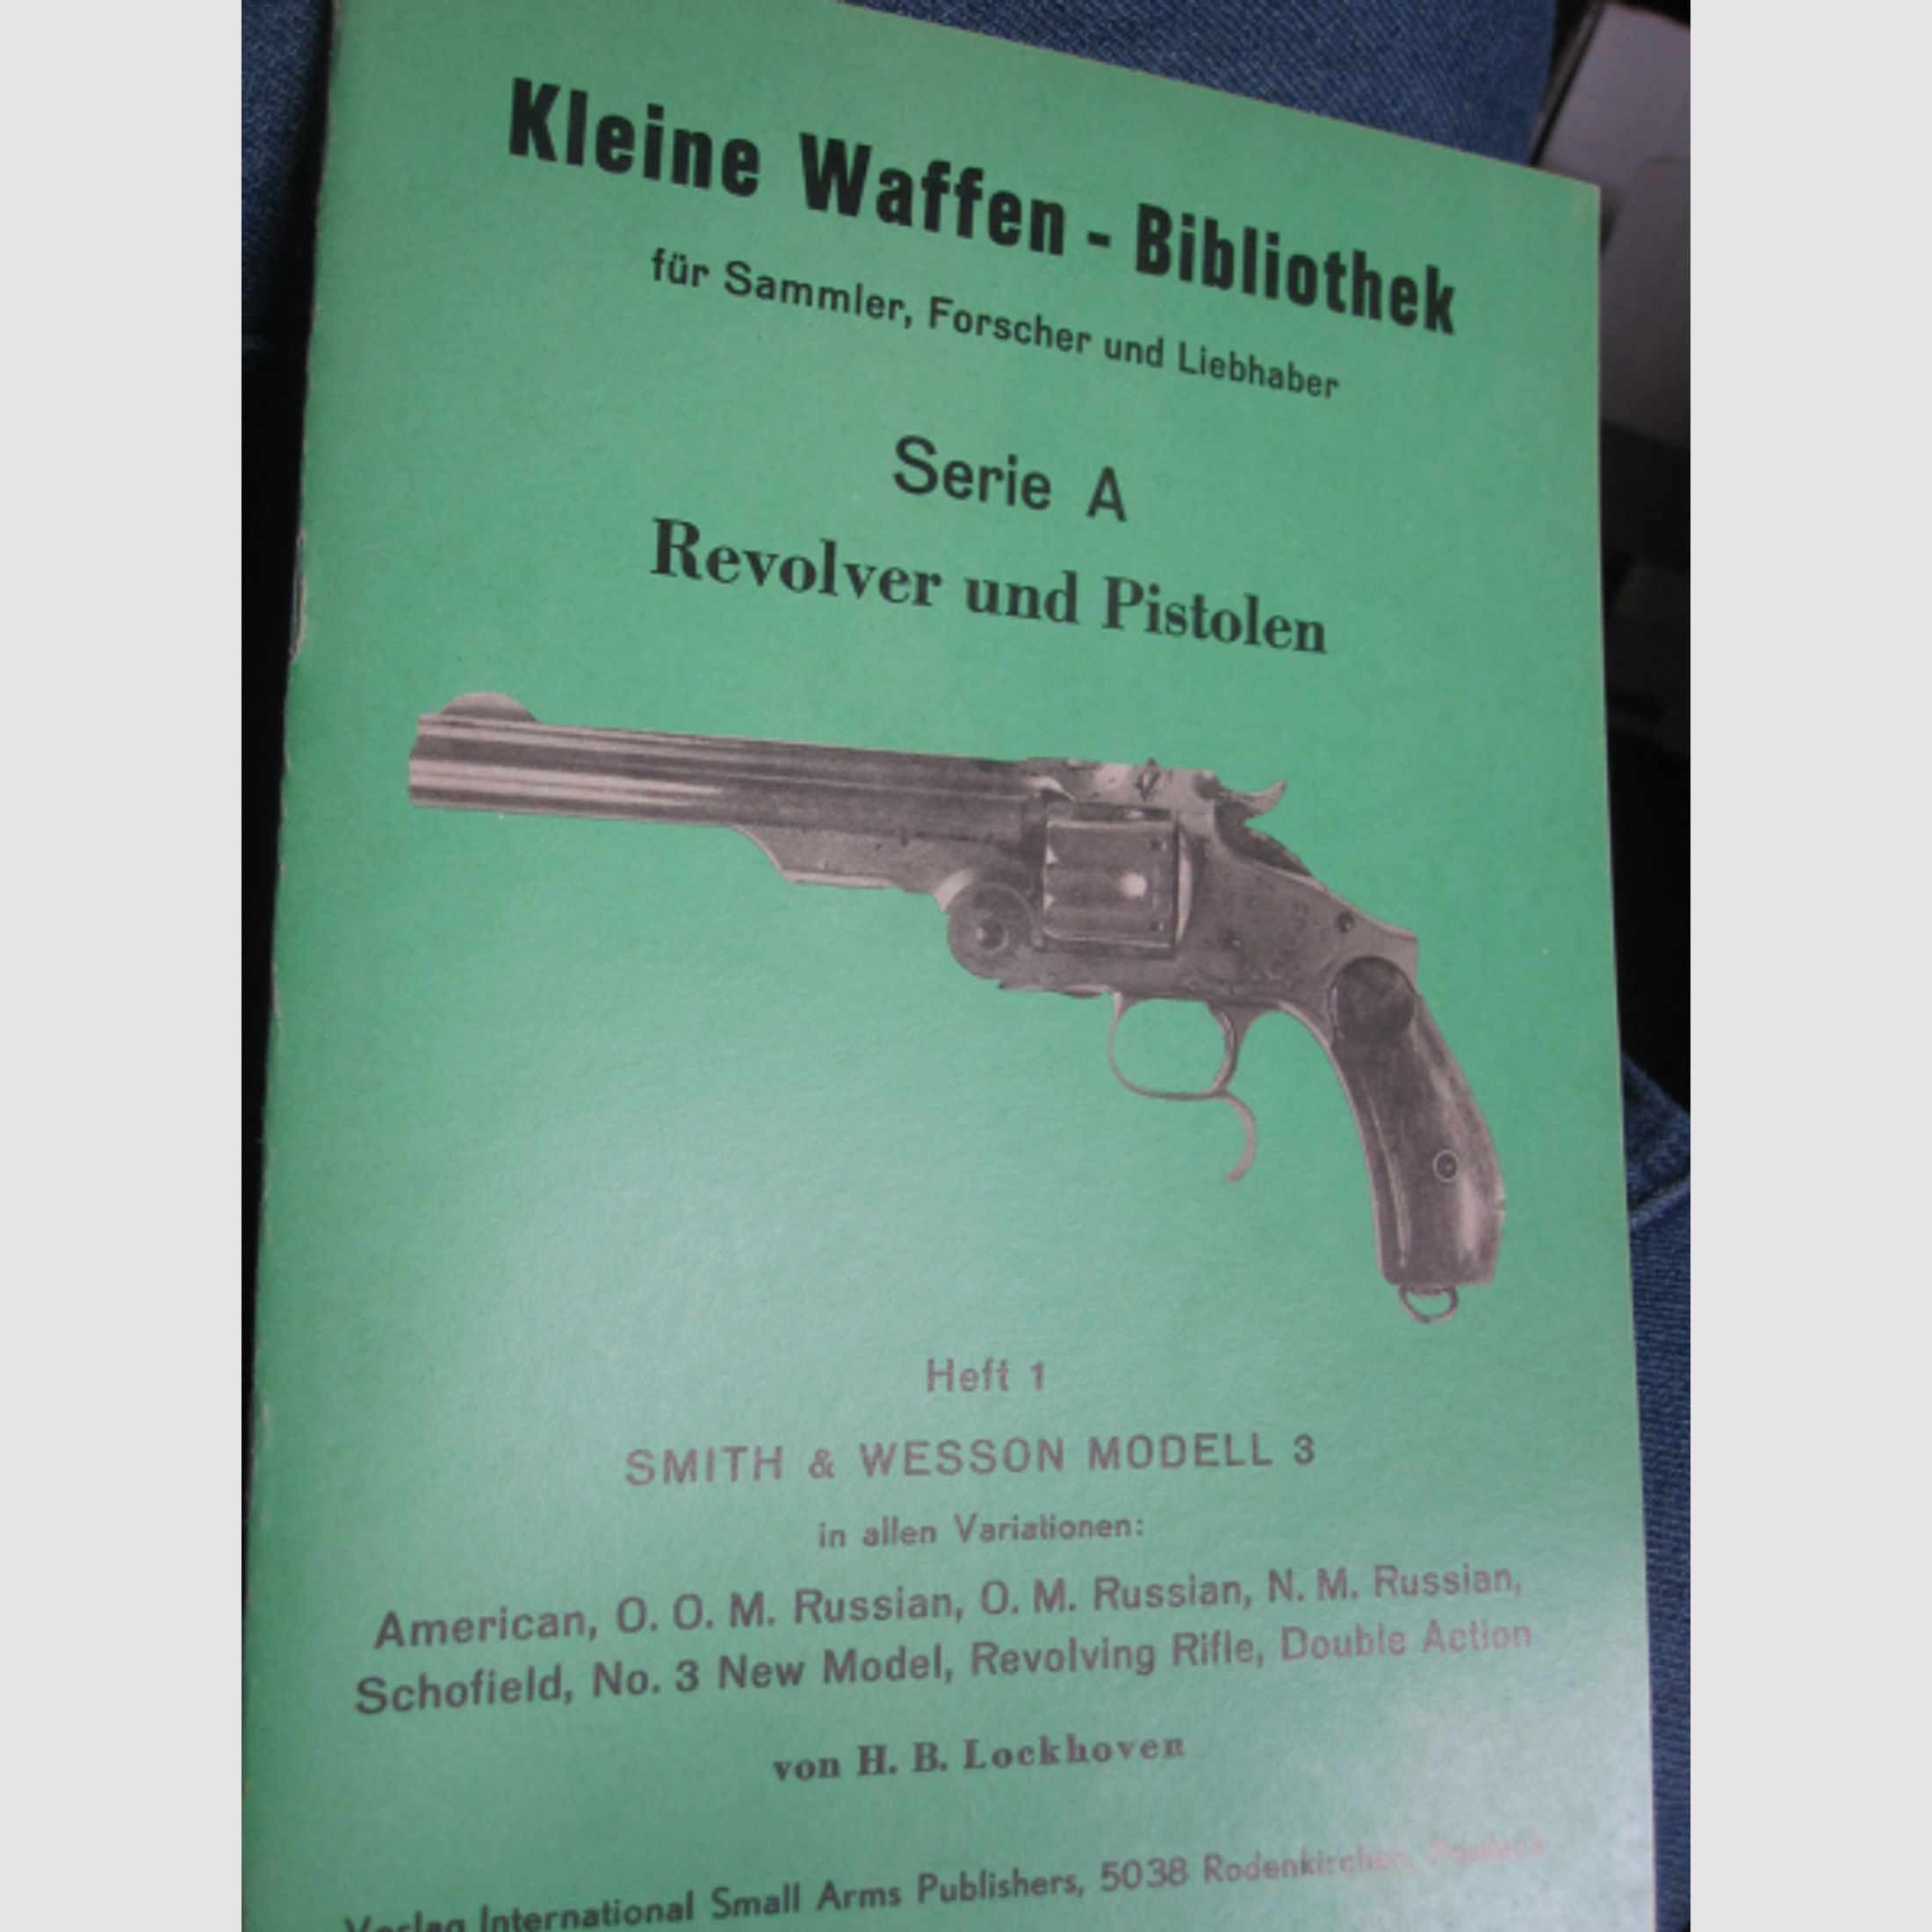 LOCKHOVEN Kleine Waffen Bibliothek Shmith&Wesson Modell 3 Revolver